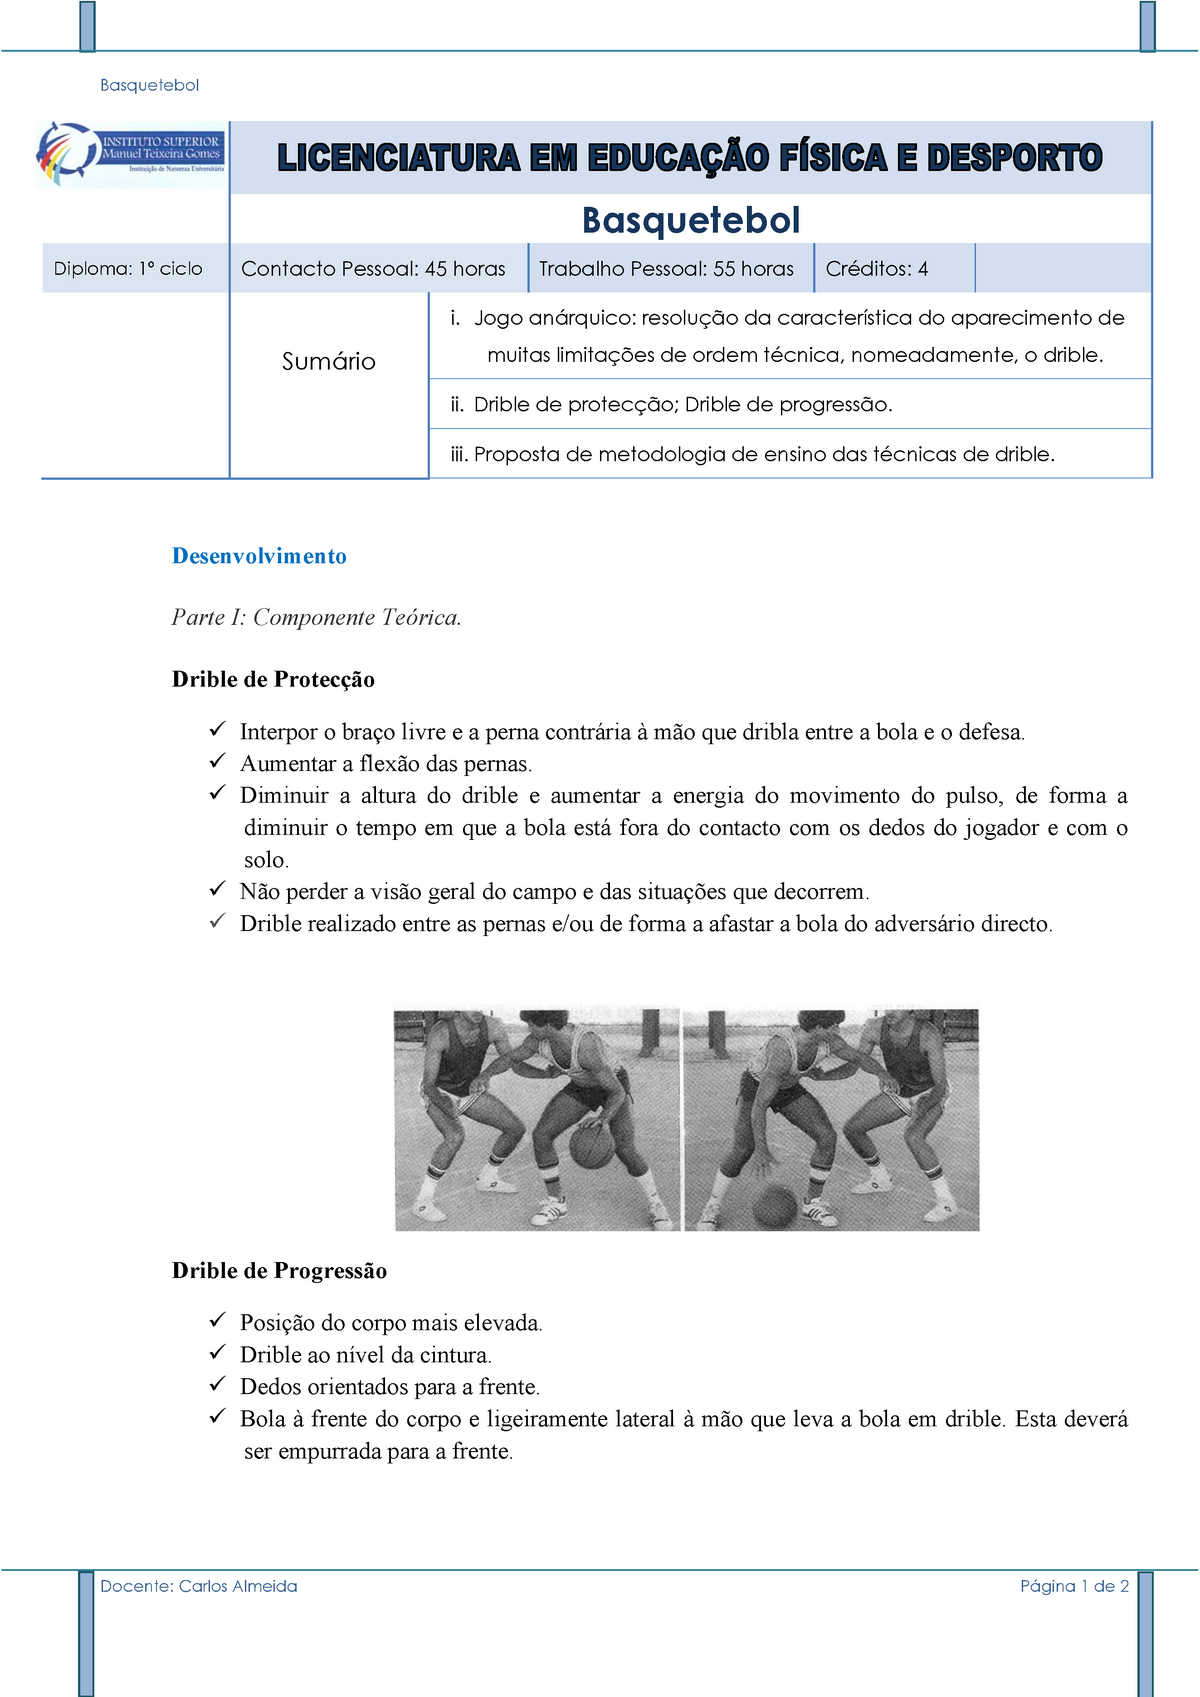 Basquetebol regras exerciocios, Exercícios Educação Psicomotora